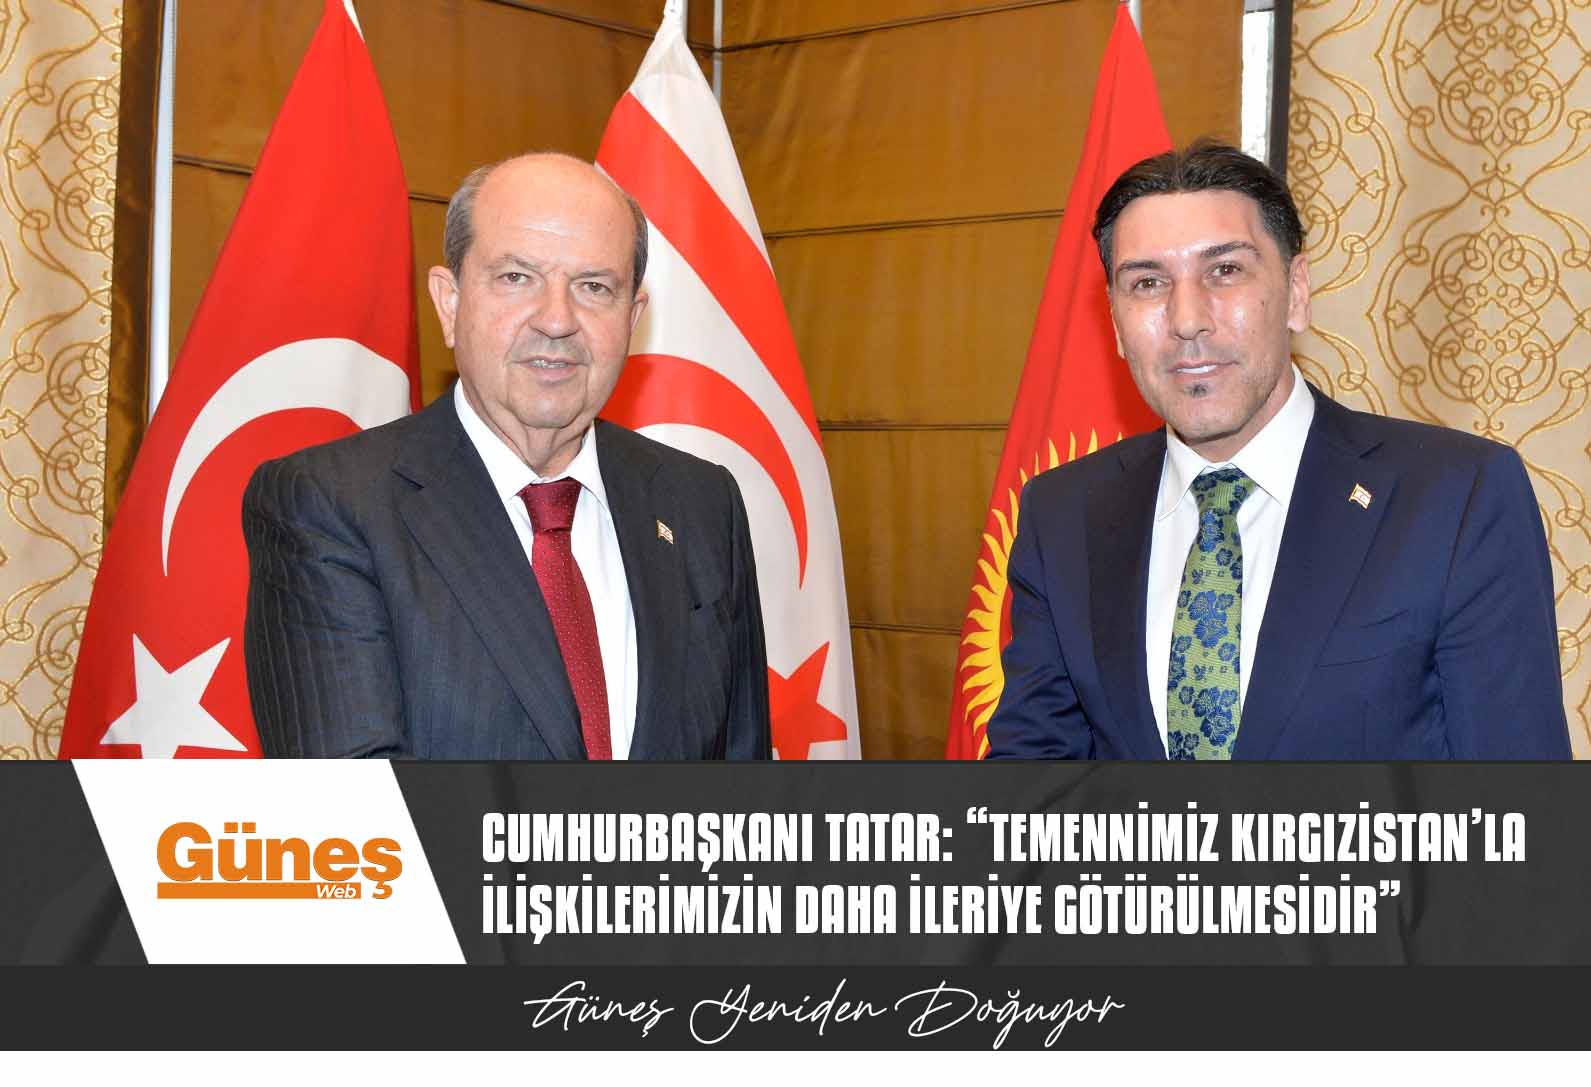 Cumhurbaşkanı Tatar: “Temennimiz Kırgızistan’la ilişkilerimizin daha ileriye götürülmesidir”